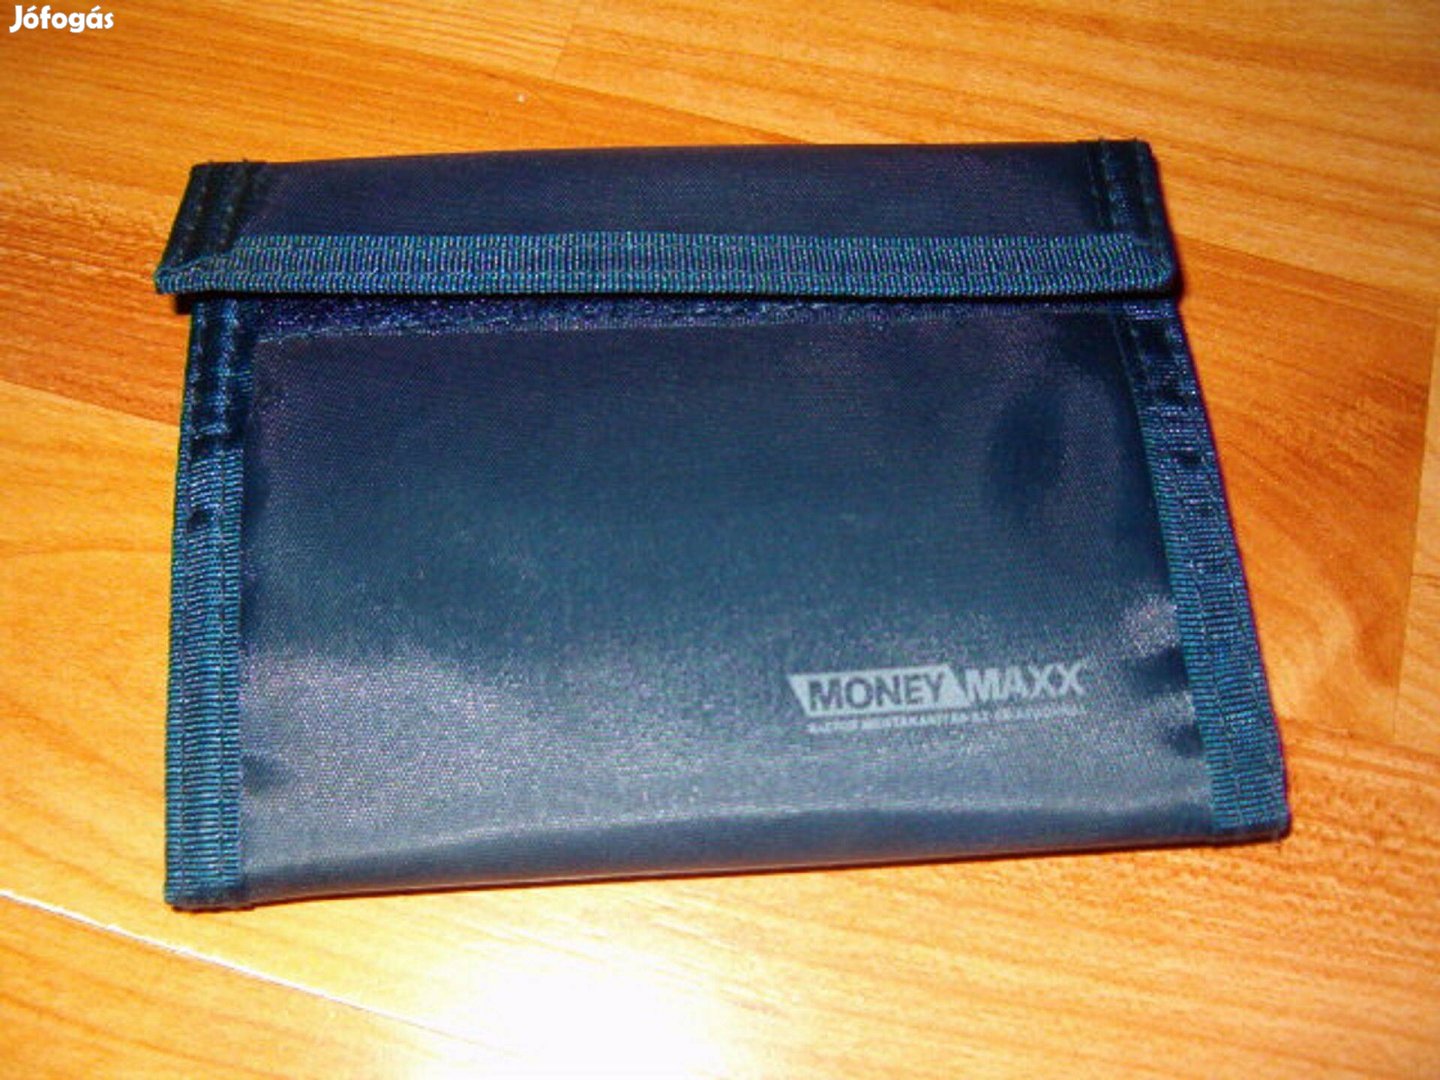 Money maxx pénztárca új